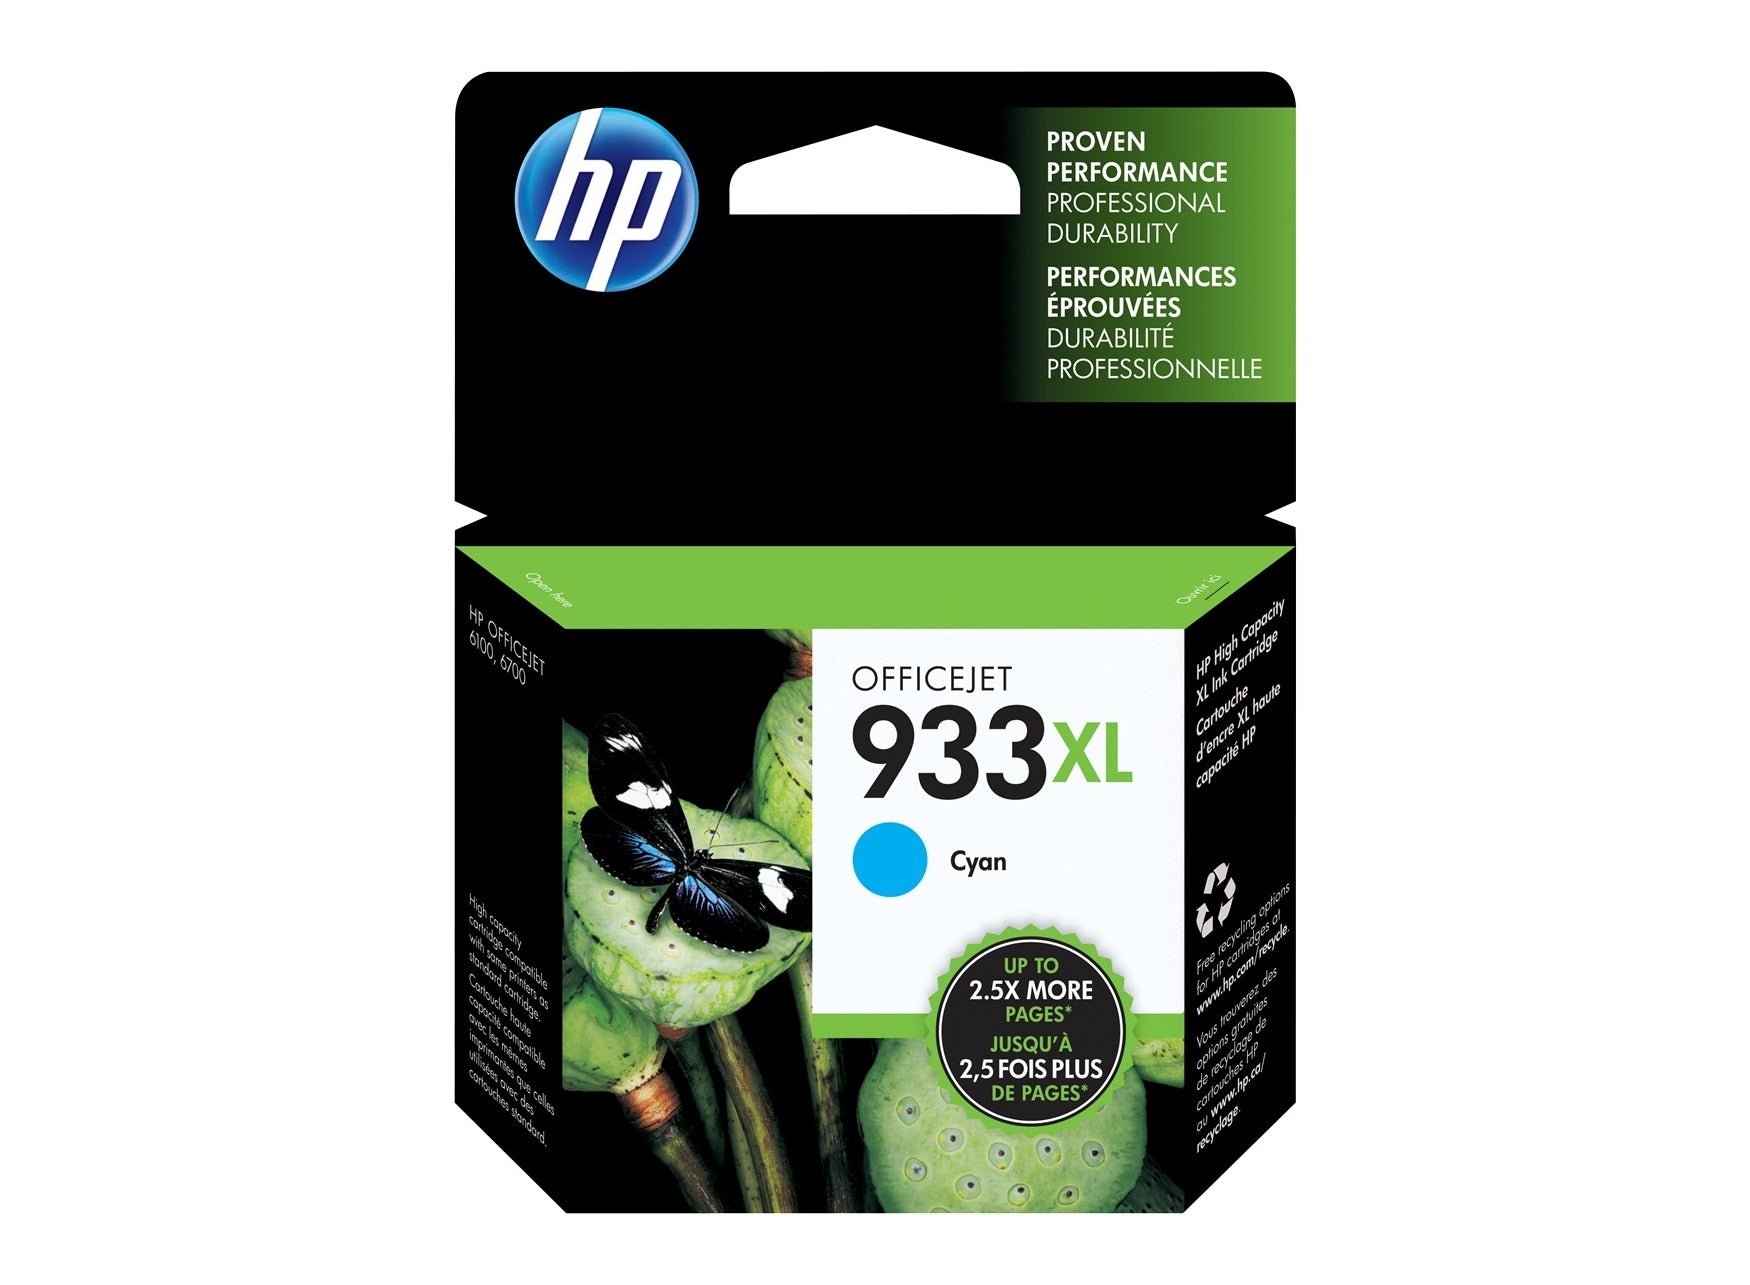 HP 932XL/933XL  Ink Cartridge for HP Officjet 7610